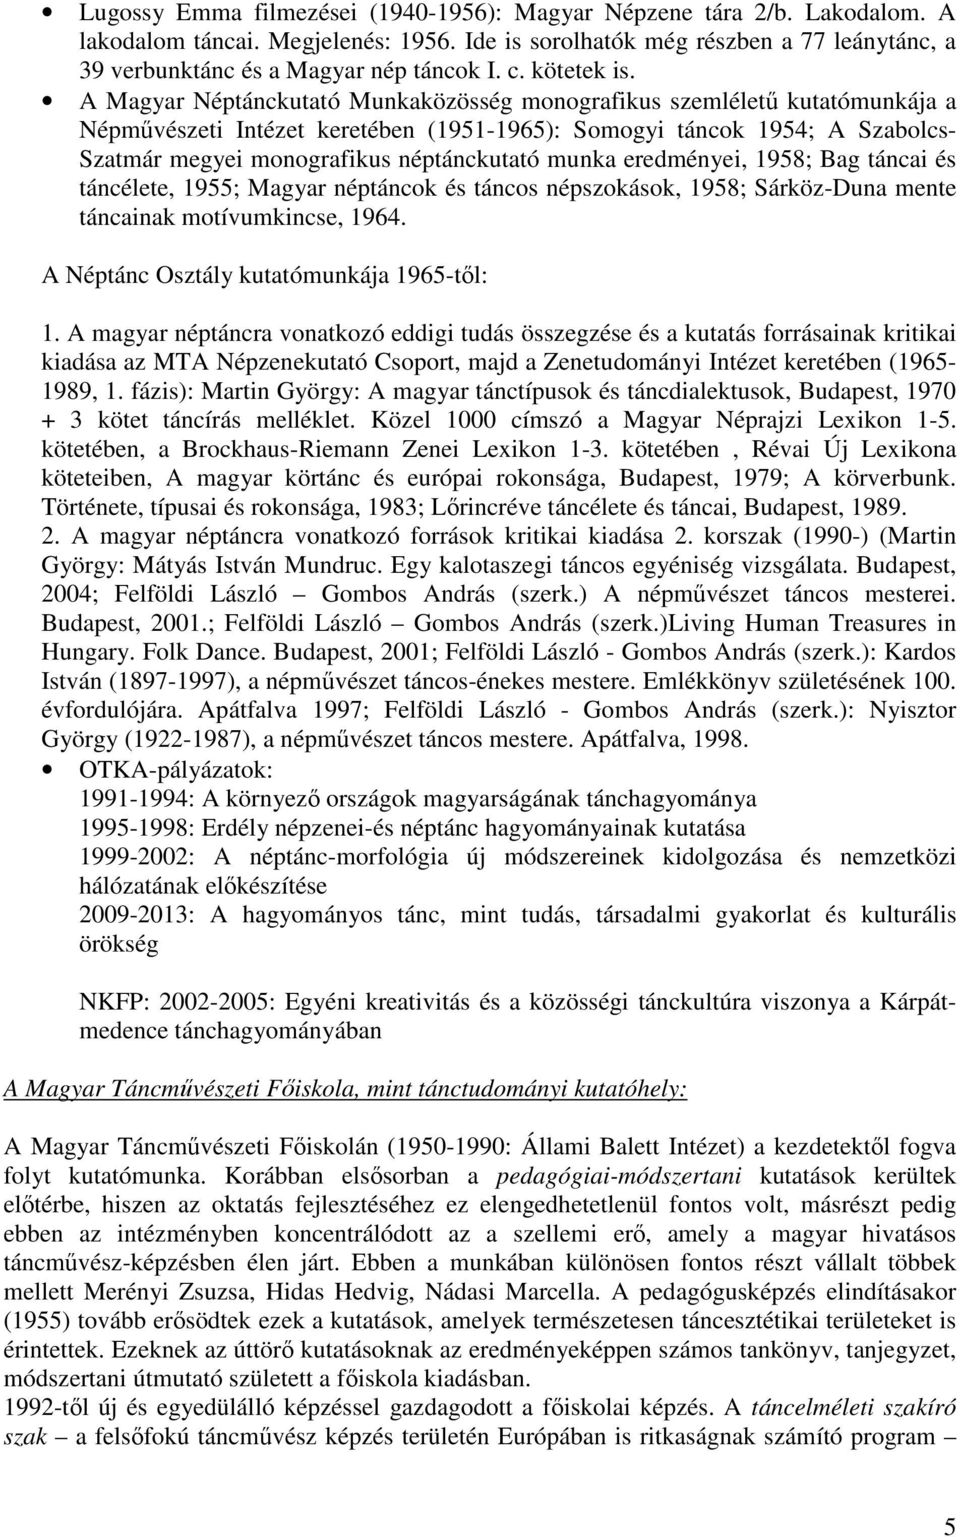 A Magyar Néptánckutató Munkaközösség monografikus szemlélető kutatómunkája a Népmővészeti Intézet keretében (1951-1965): Somogyi táncok 1954; A Szabolcs- Szatmár megyei monografikus néptánckutató